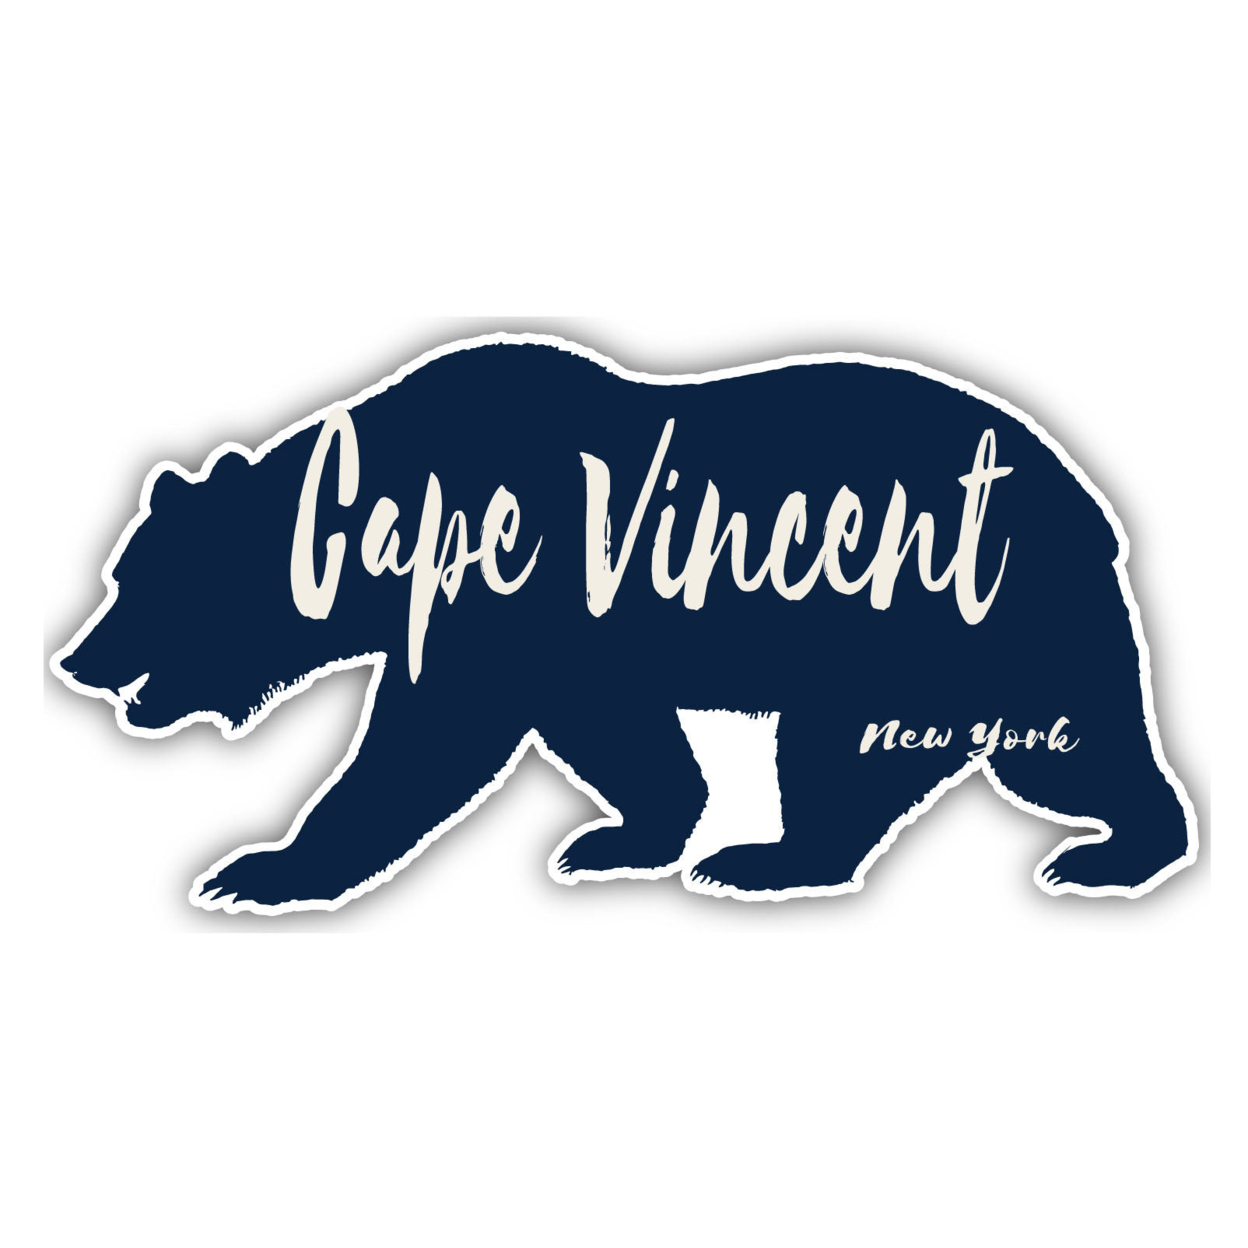 Cape Vincent New York Souvenir Decorative Stickers (Choose Theme And Size) - Single Unit, 12-Inch, Bear